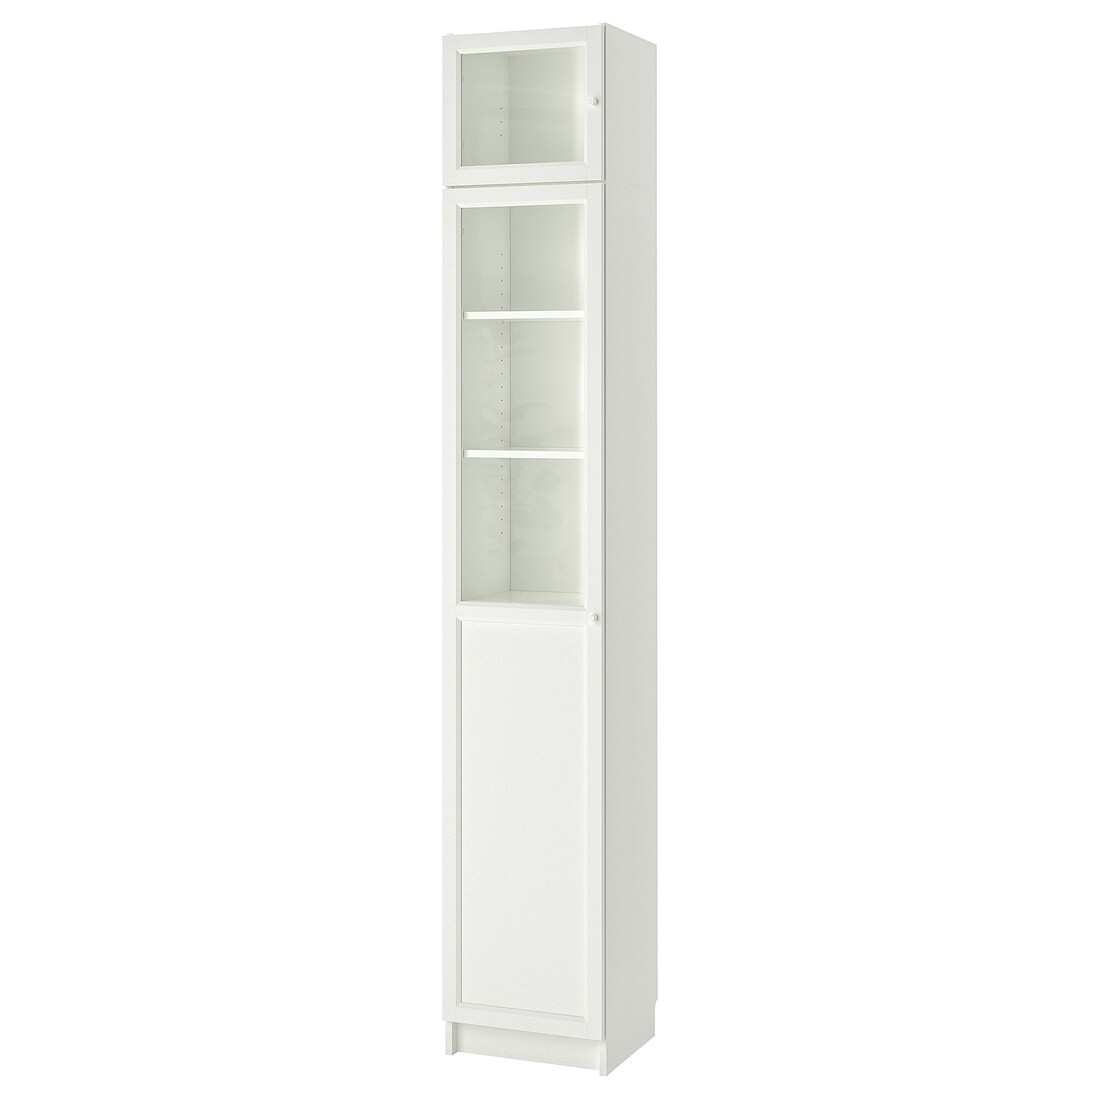 IKEA BILLY БИЛЛИ Стеллаж с надставкой / глухими / стеклянными дверьми, белый / стекло, 40x42x237 cм 89398860 893.988.60